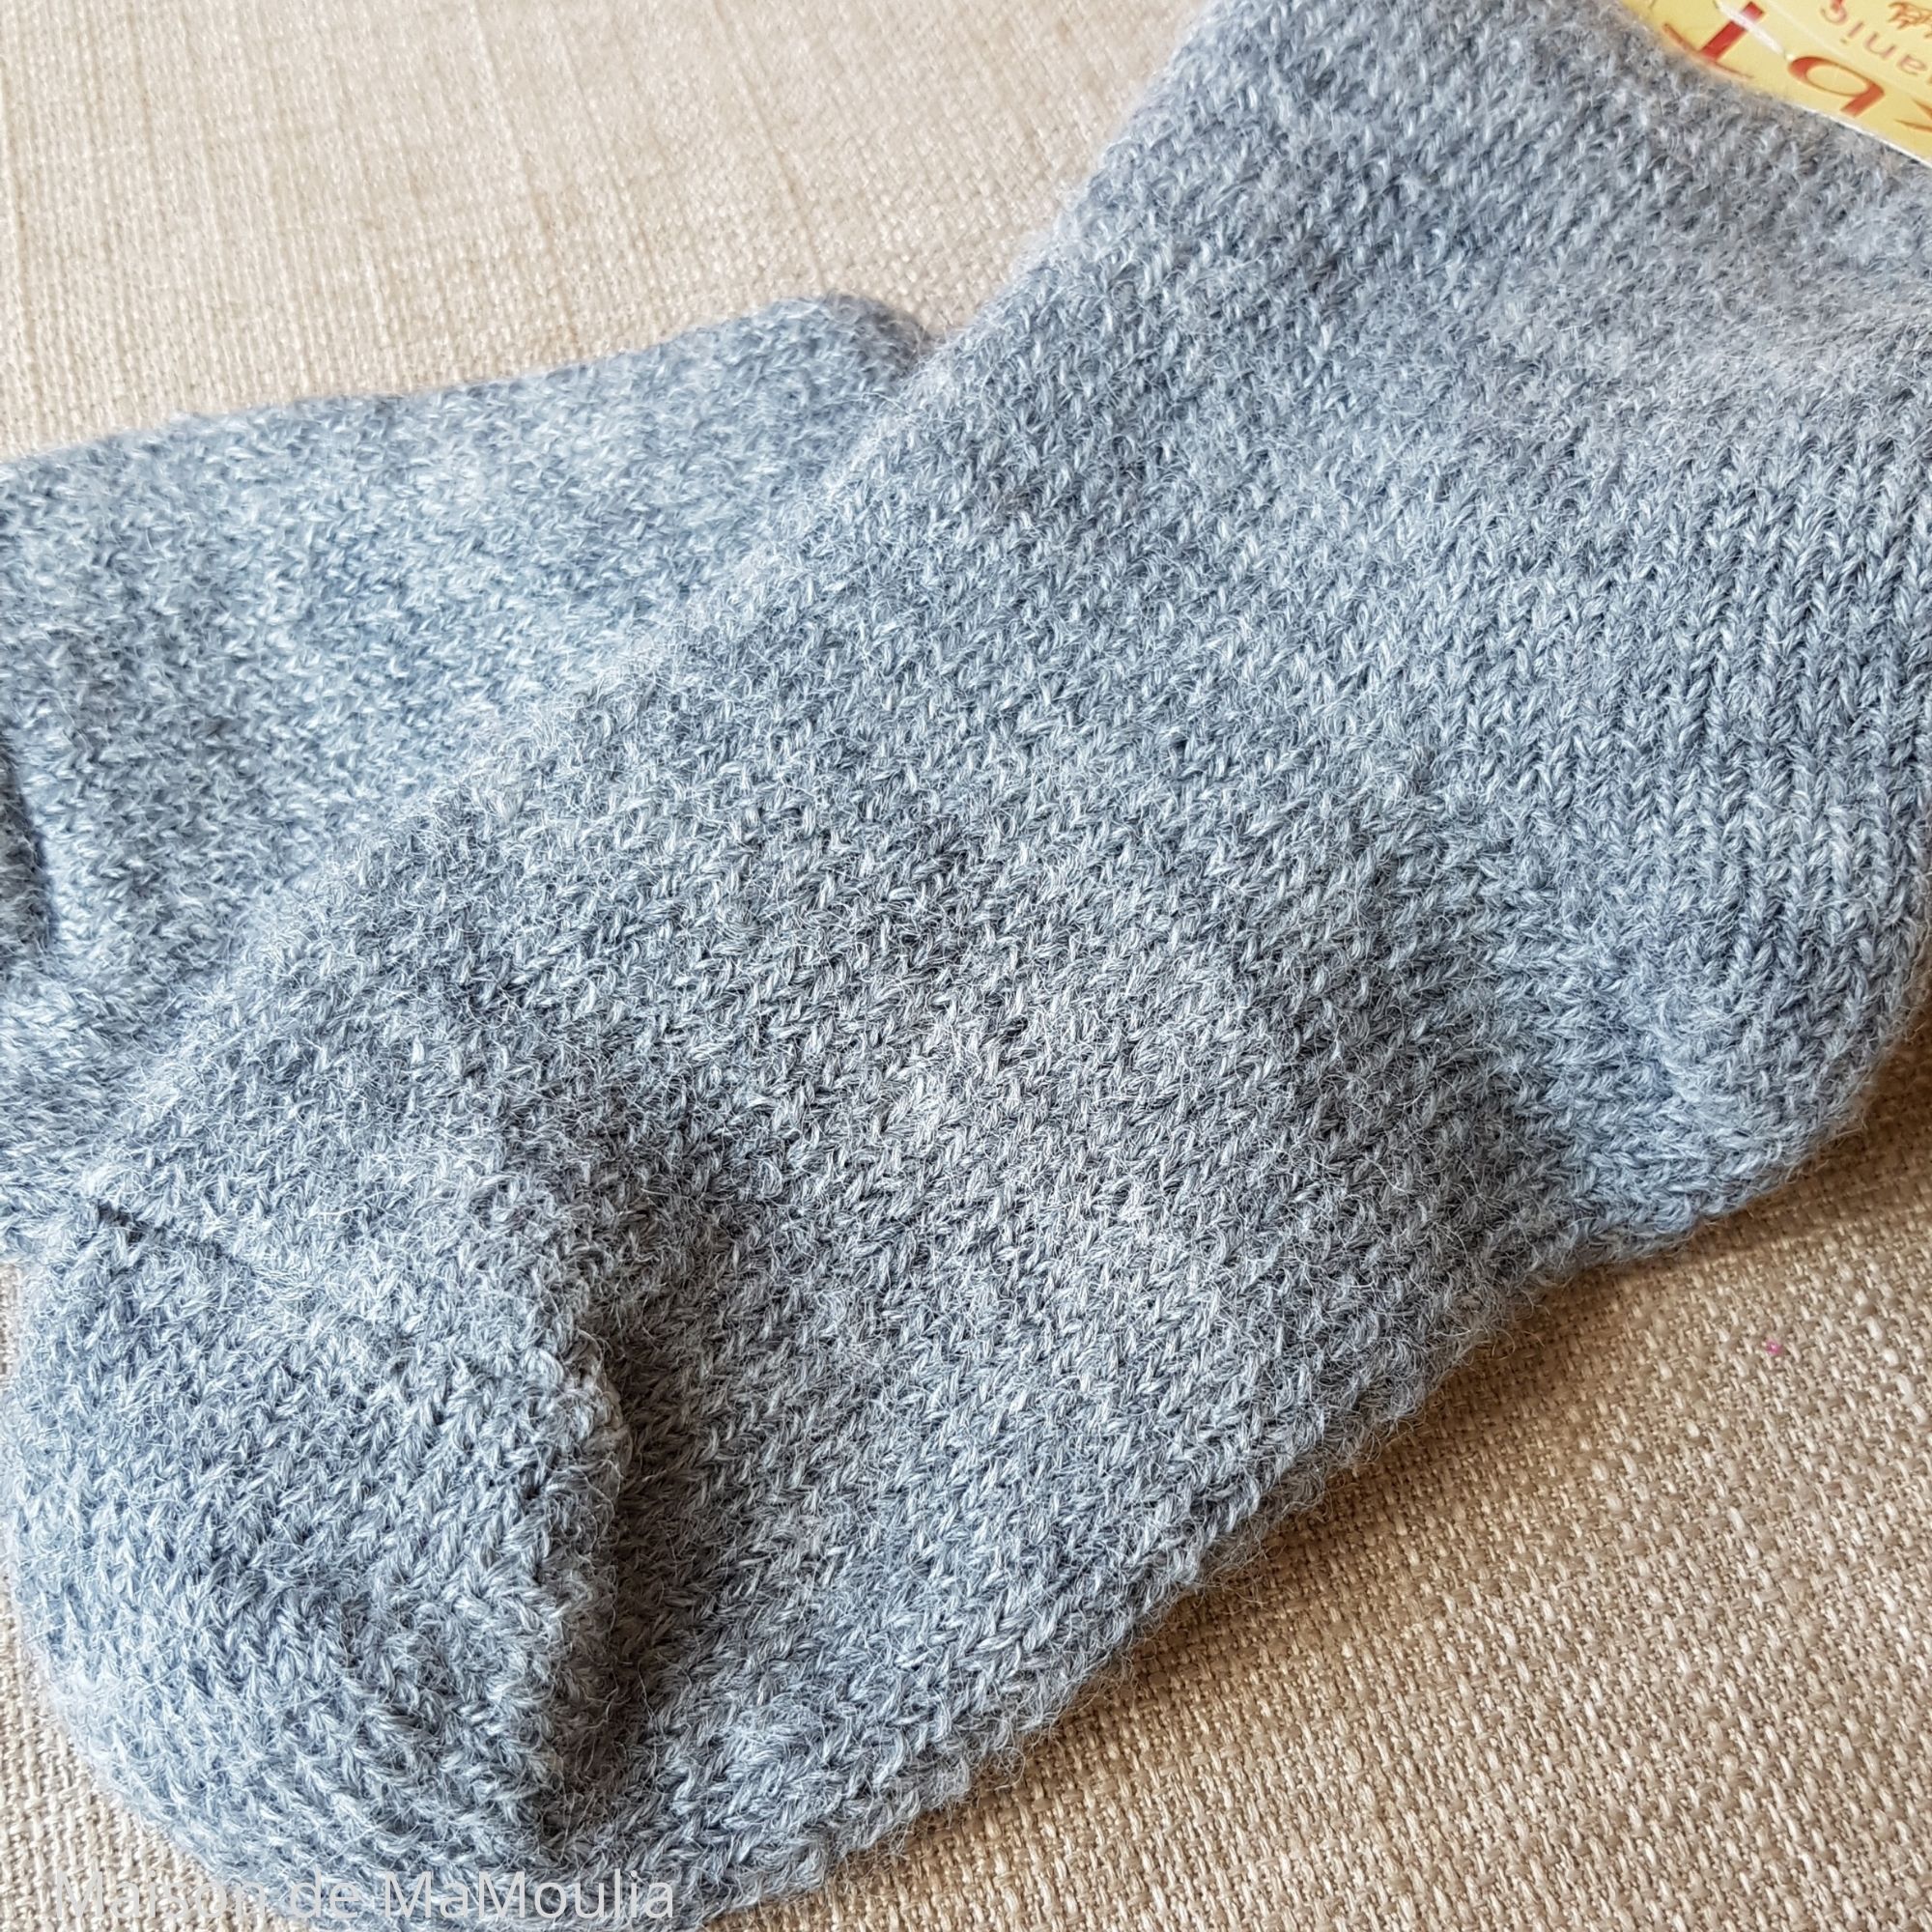 10-chaussettes-chaudes-pure-laine-bio-ecologique-hirsch-natur-bebe-enfant-maison-de-mamoulia-gris-tres-epaisses-gris